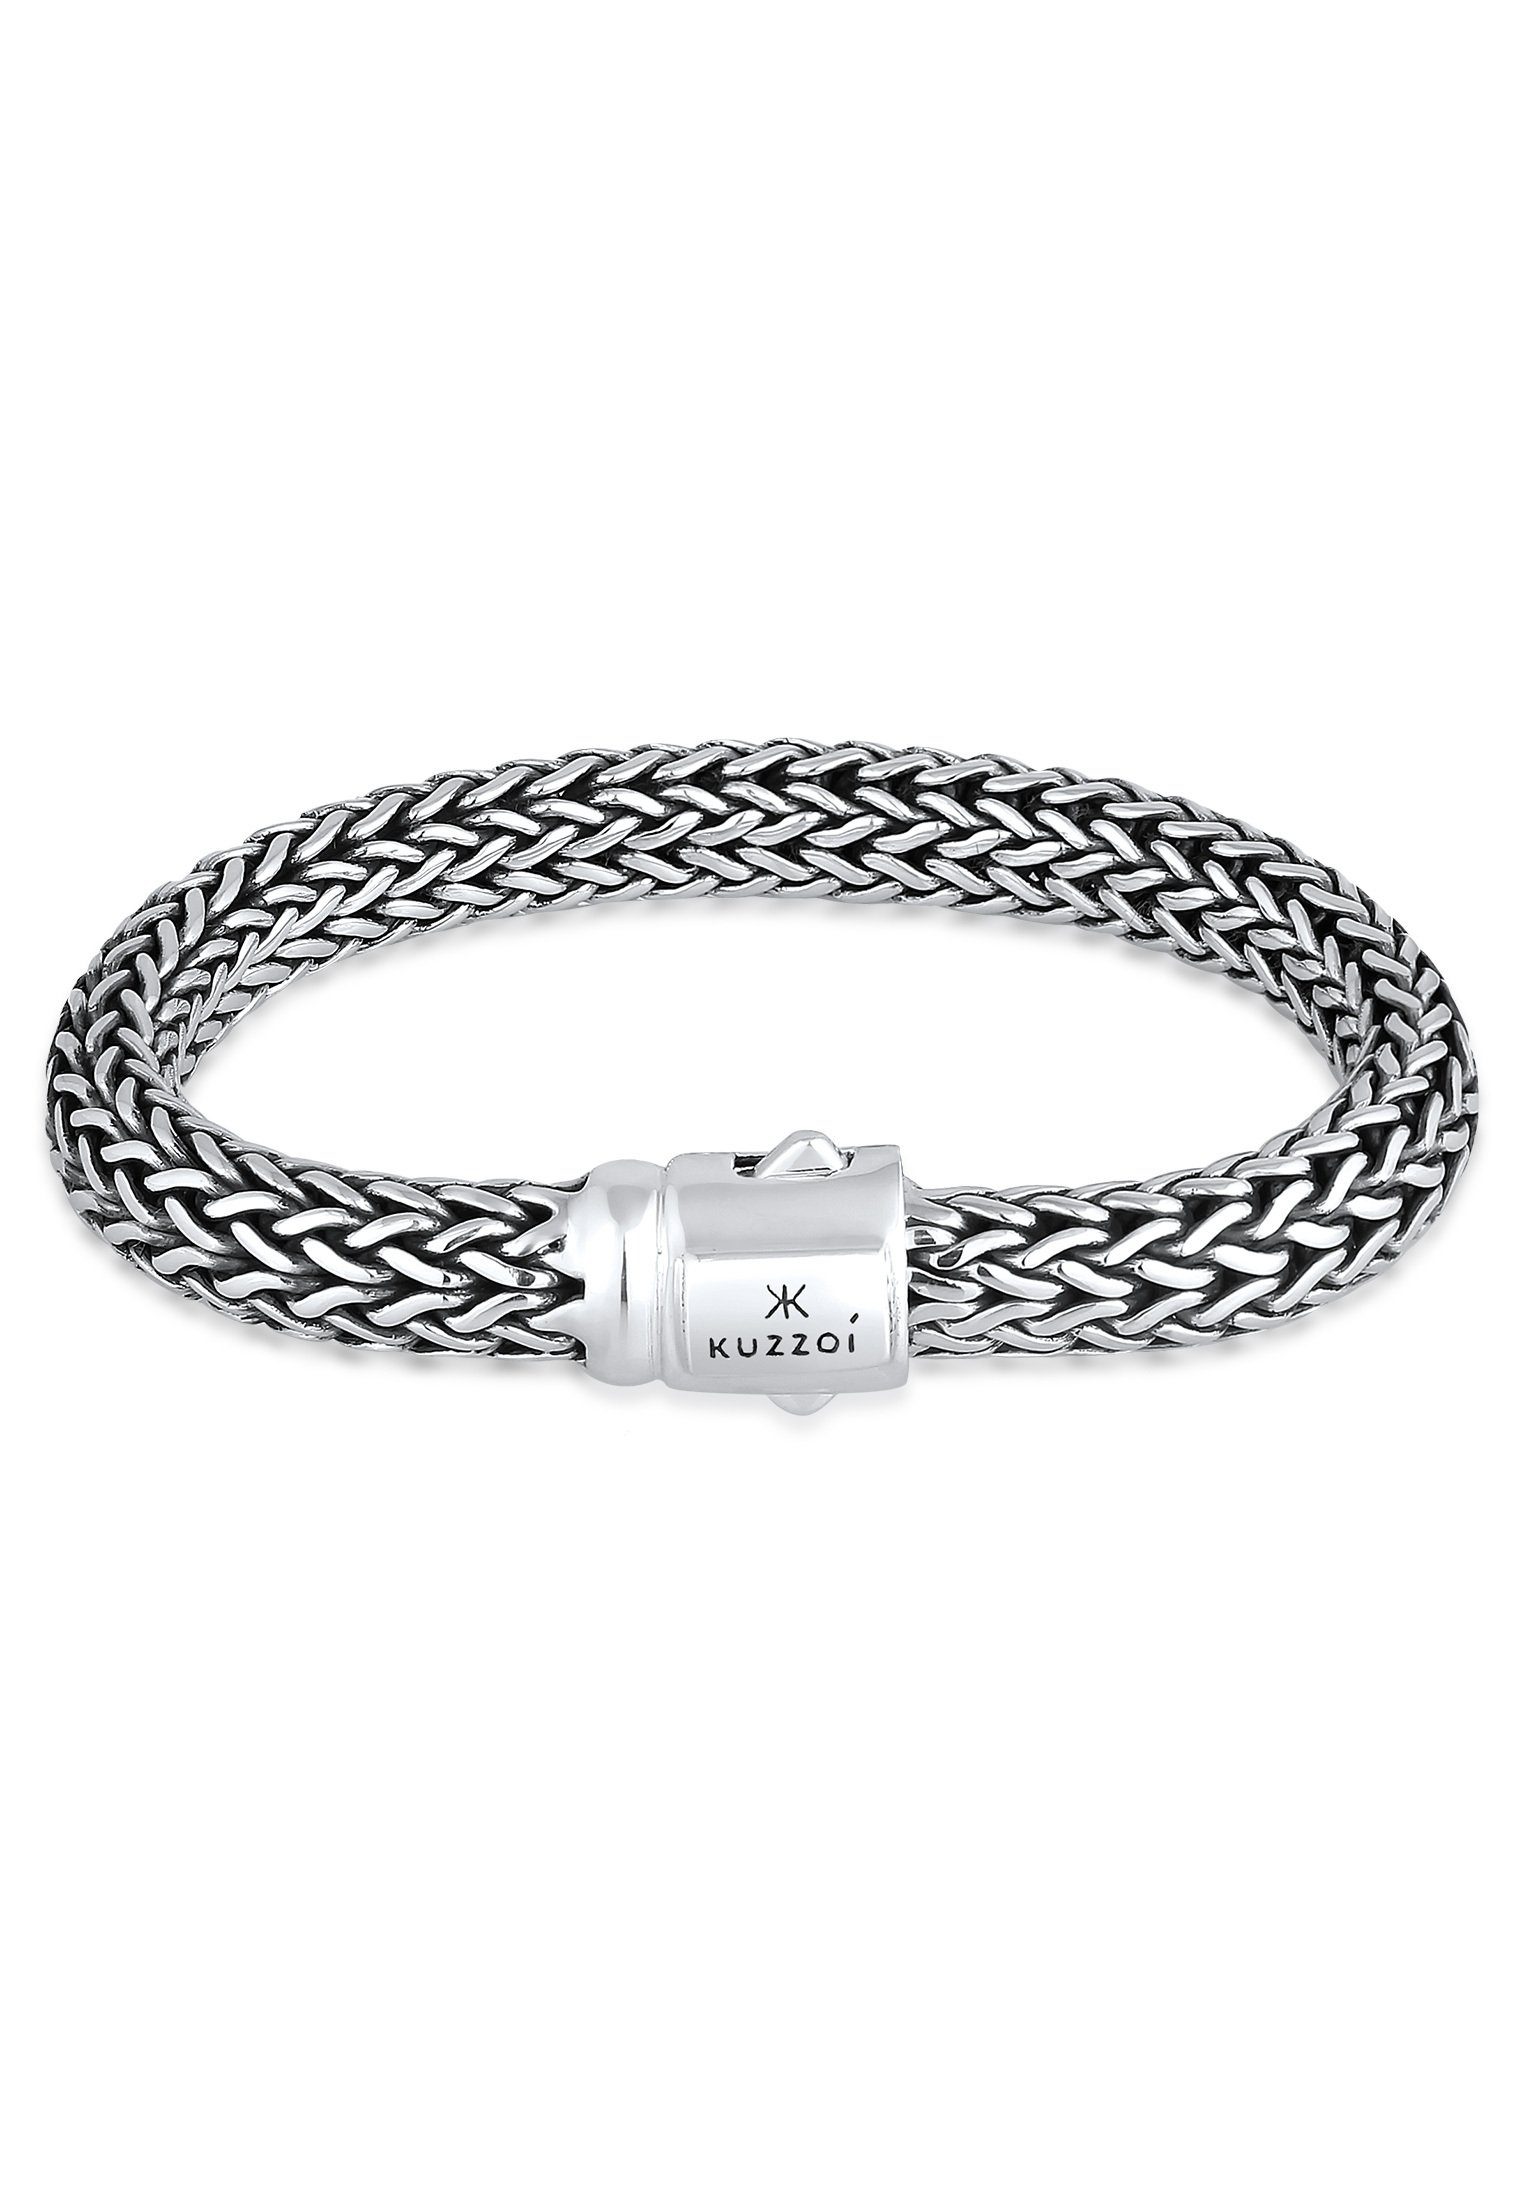 sehr gefertigt Silber, In Cool hochwertiger Juwelier-Qualität Armband Basic unisex Kuzzoi 925 Gliederarmband